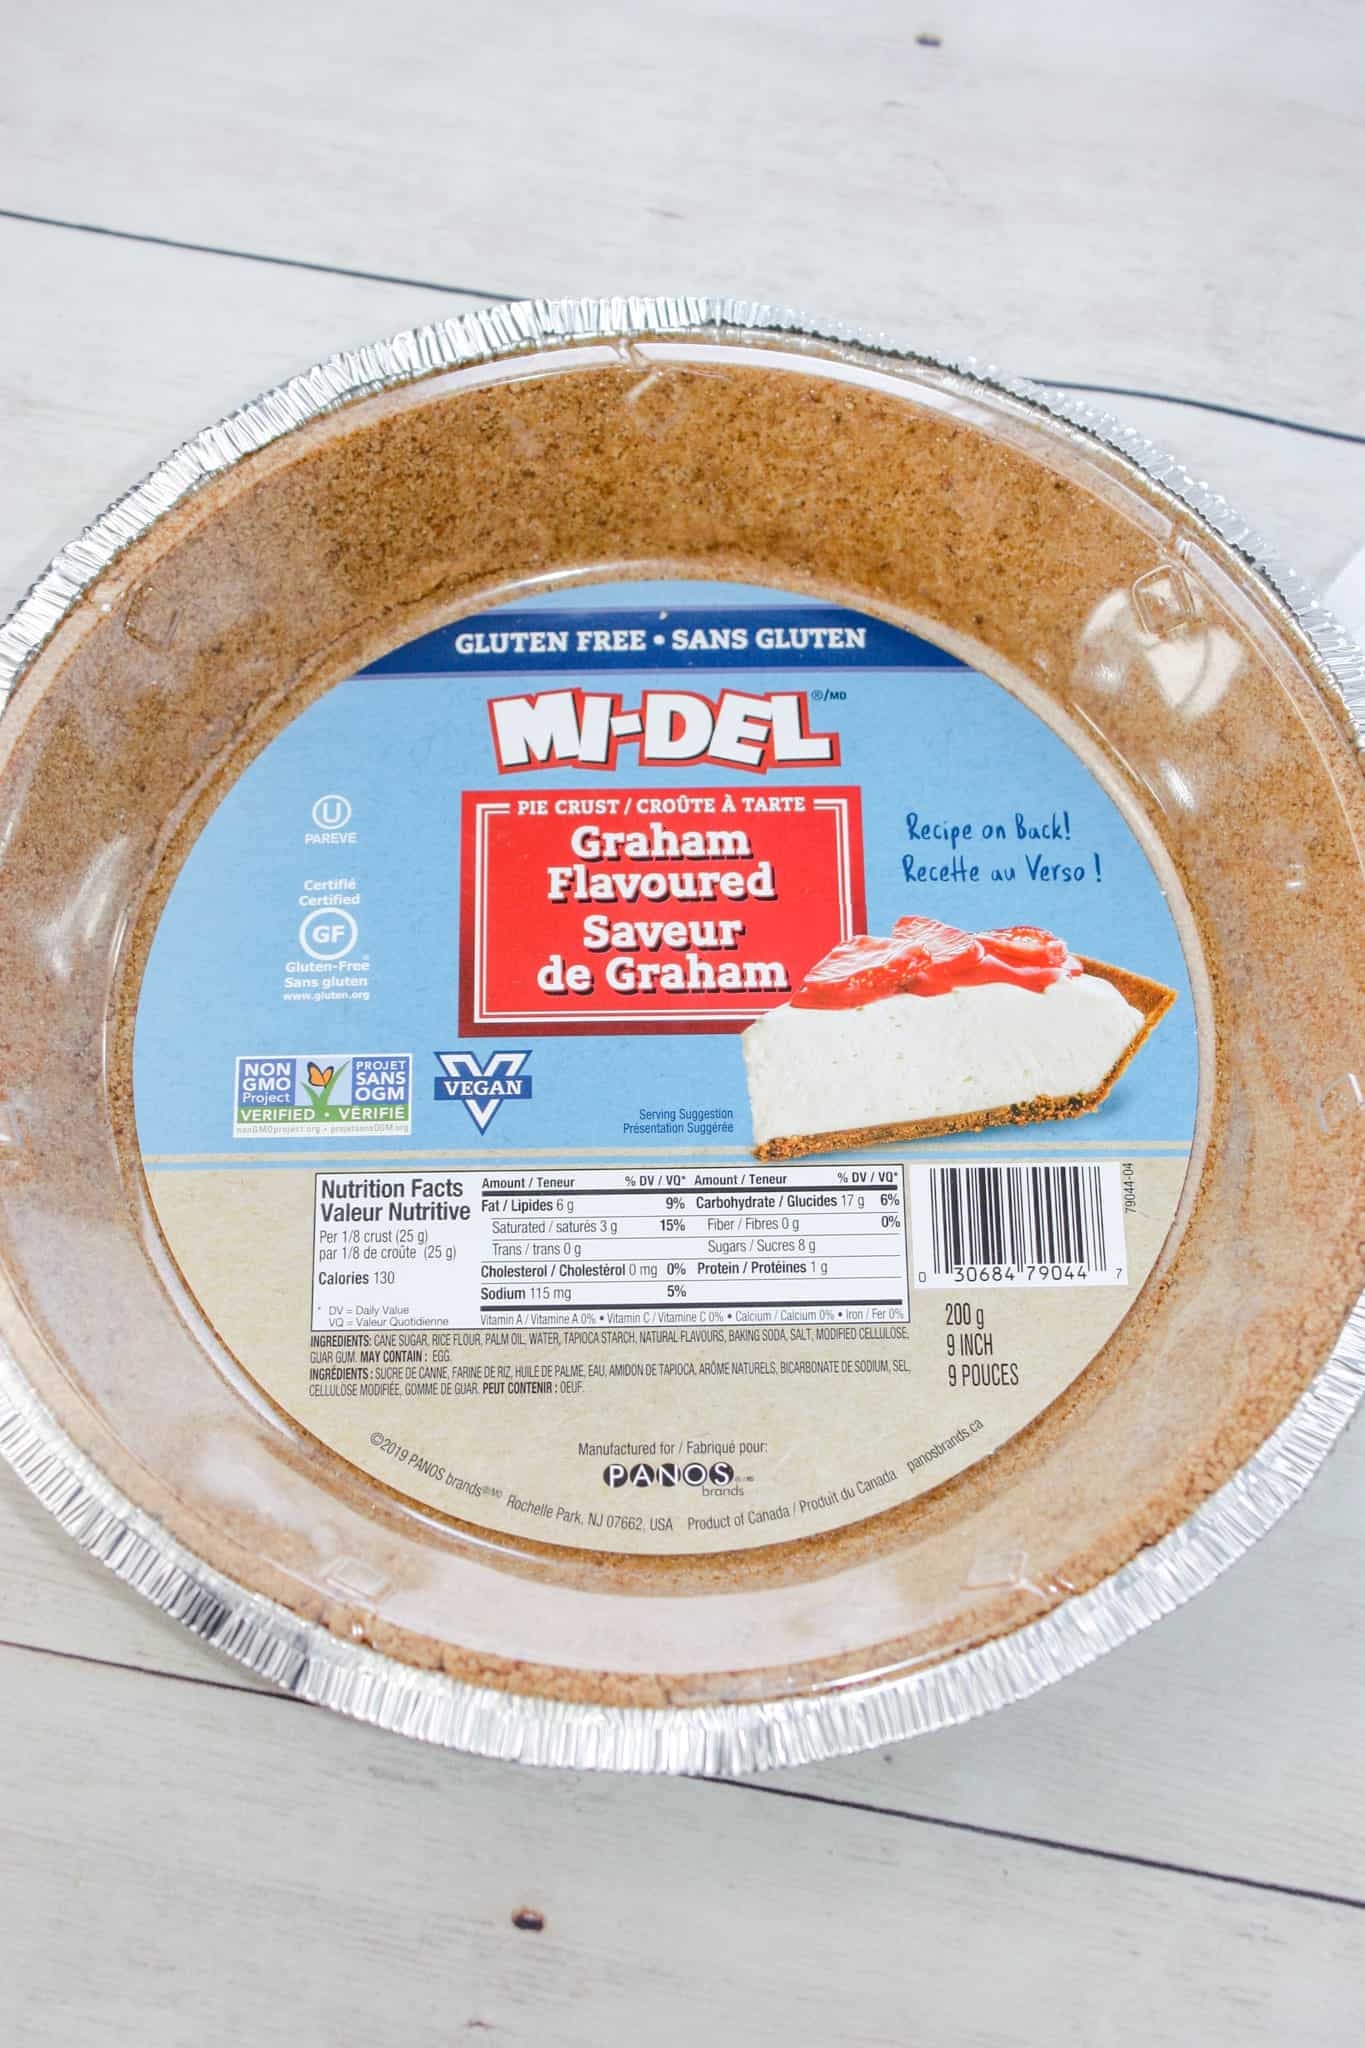 The graham pie crust.